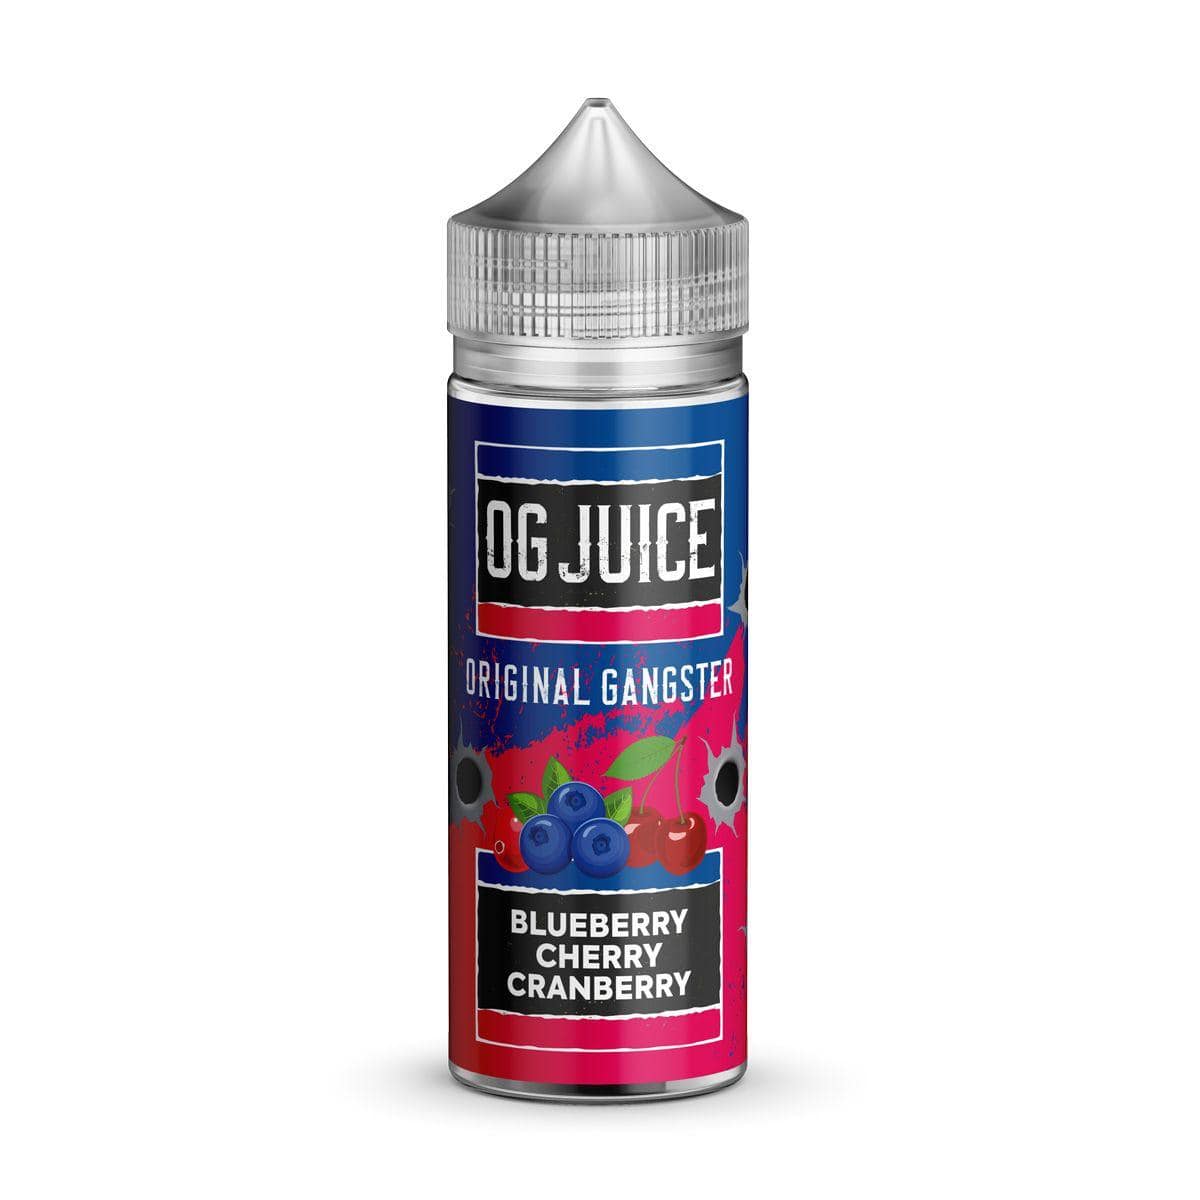 OG Juice Original Gangster - Blueberry Cherry Cranberry - 100ml E-liquid Shortfill - Mcr Vape Distro